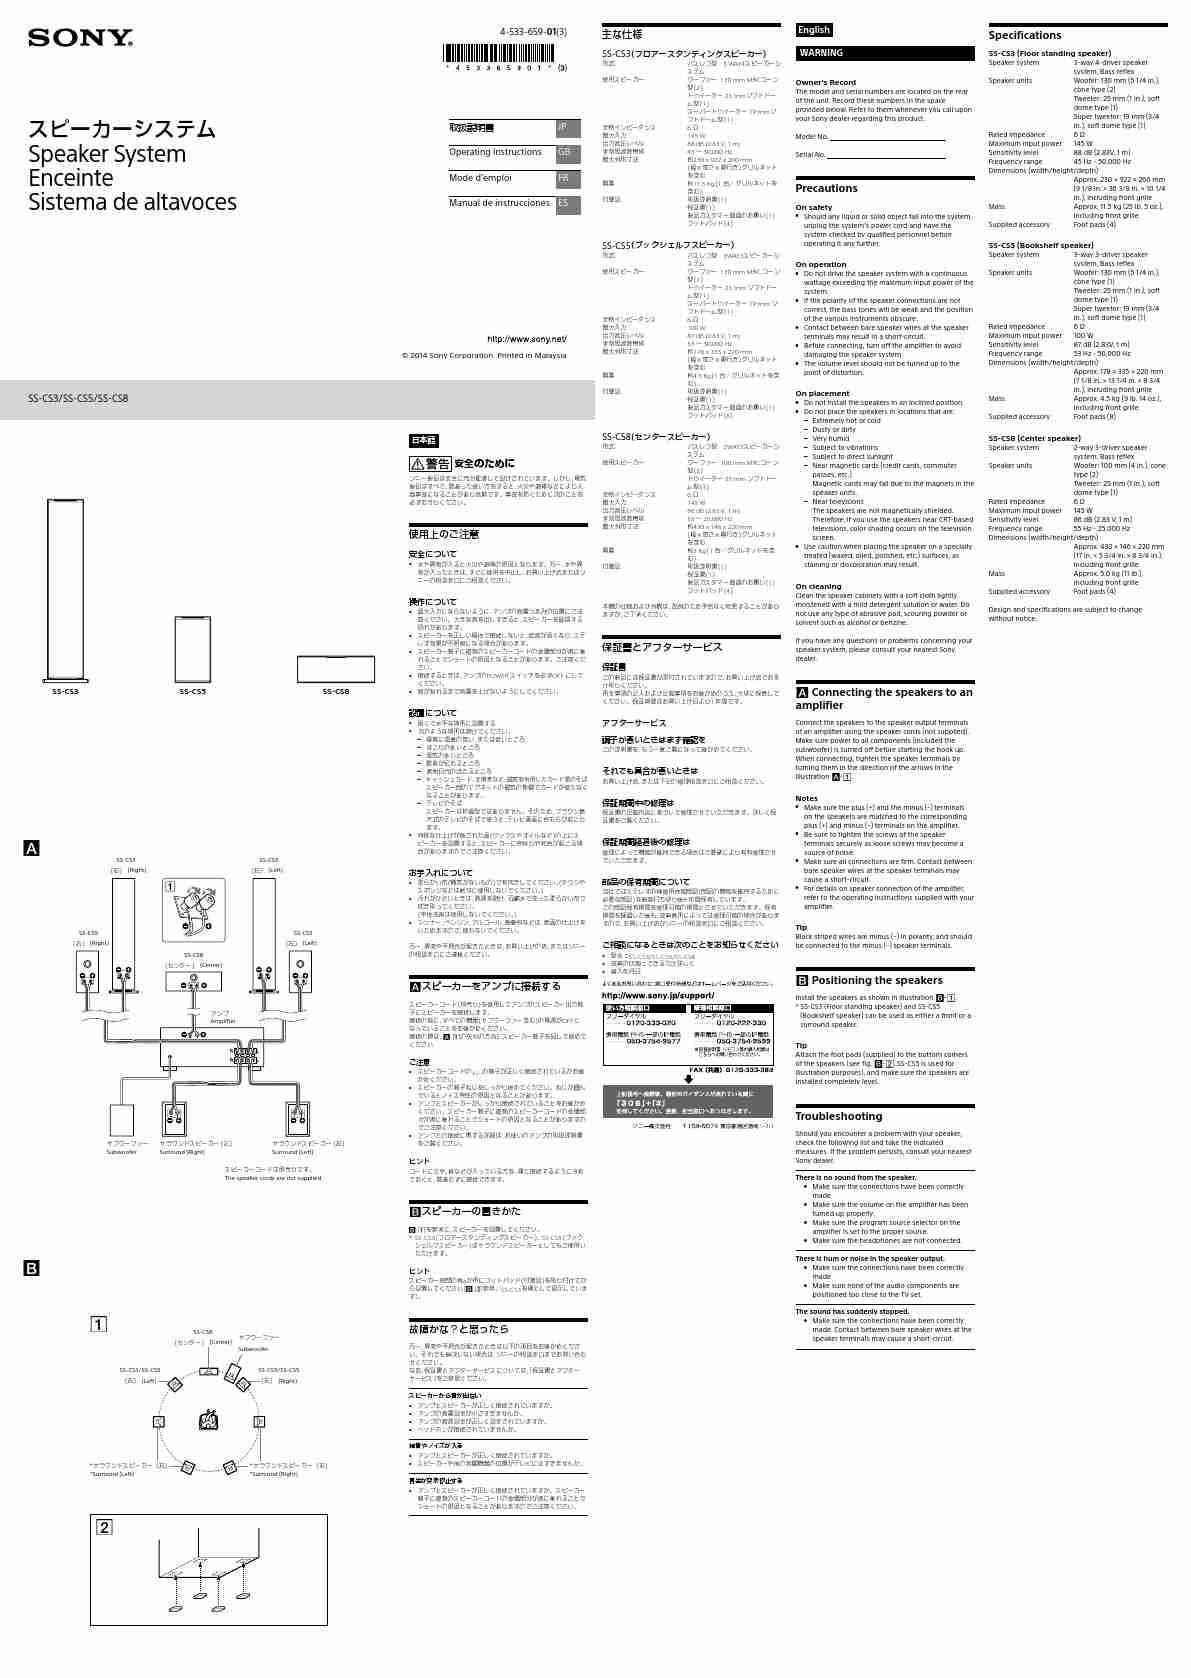 SONY SS-CS5-page_pdf